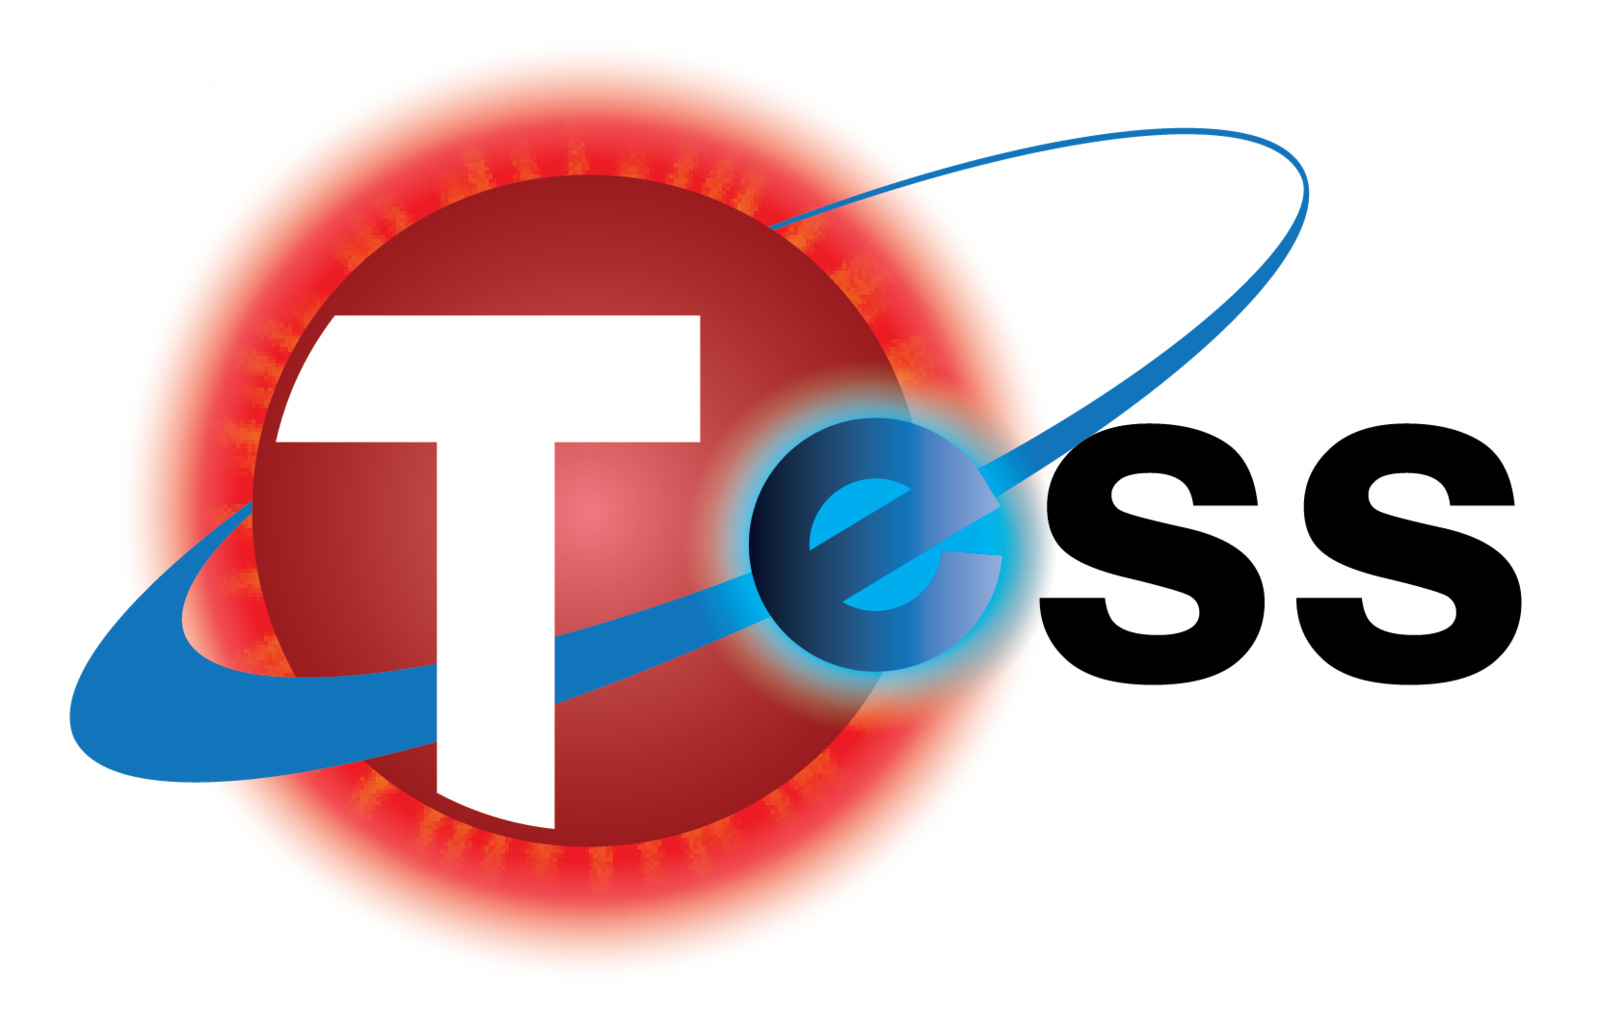 TESS logo